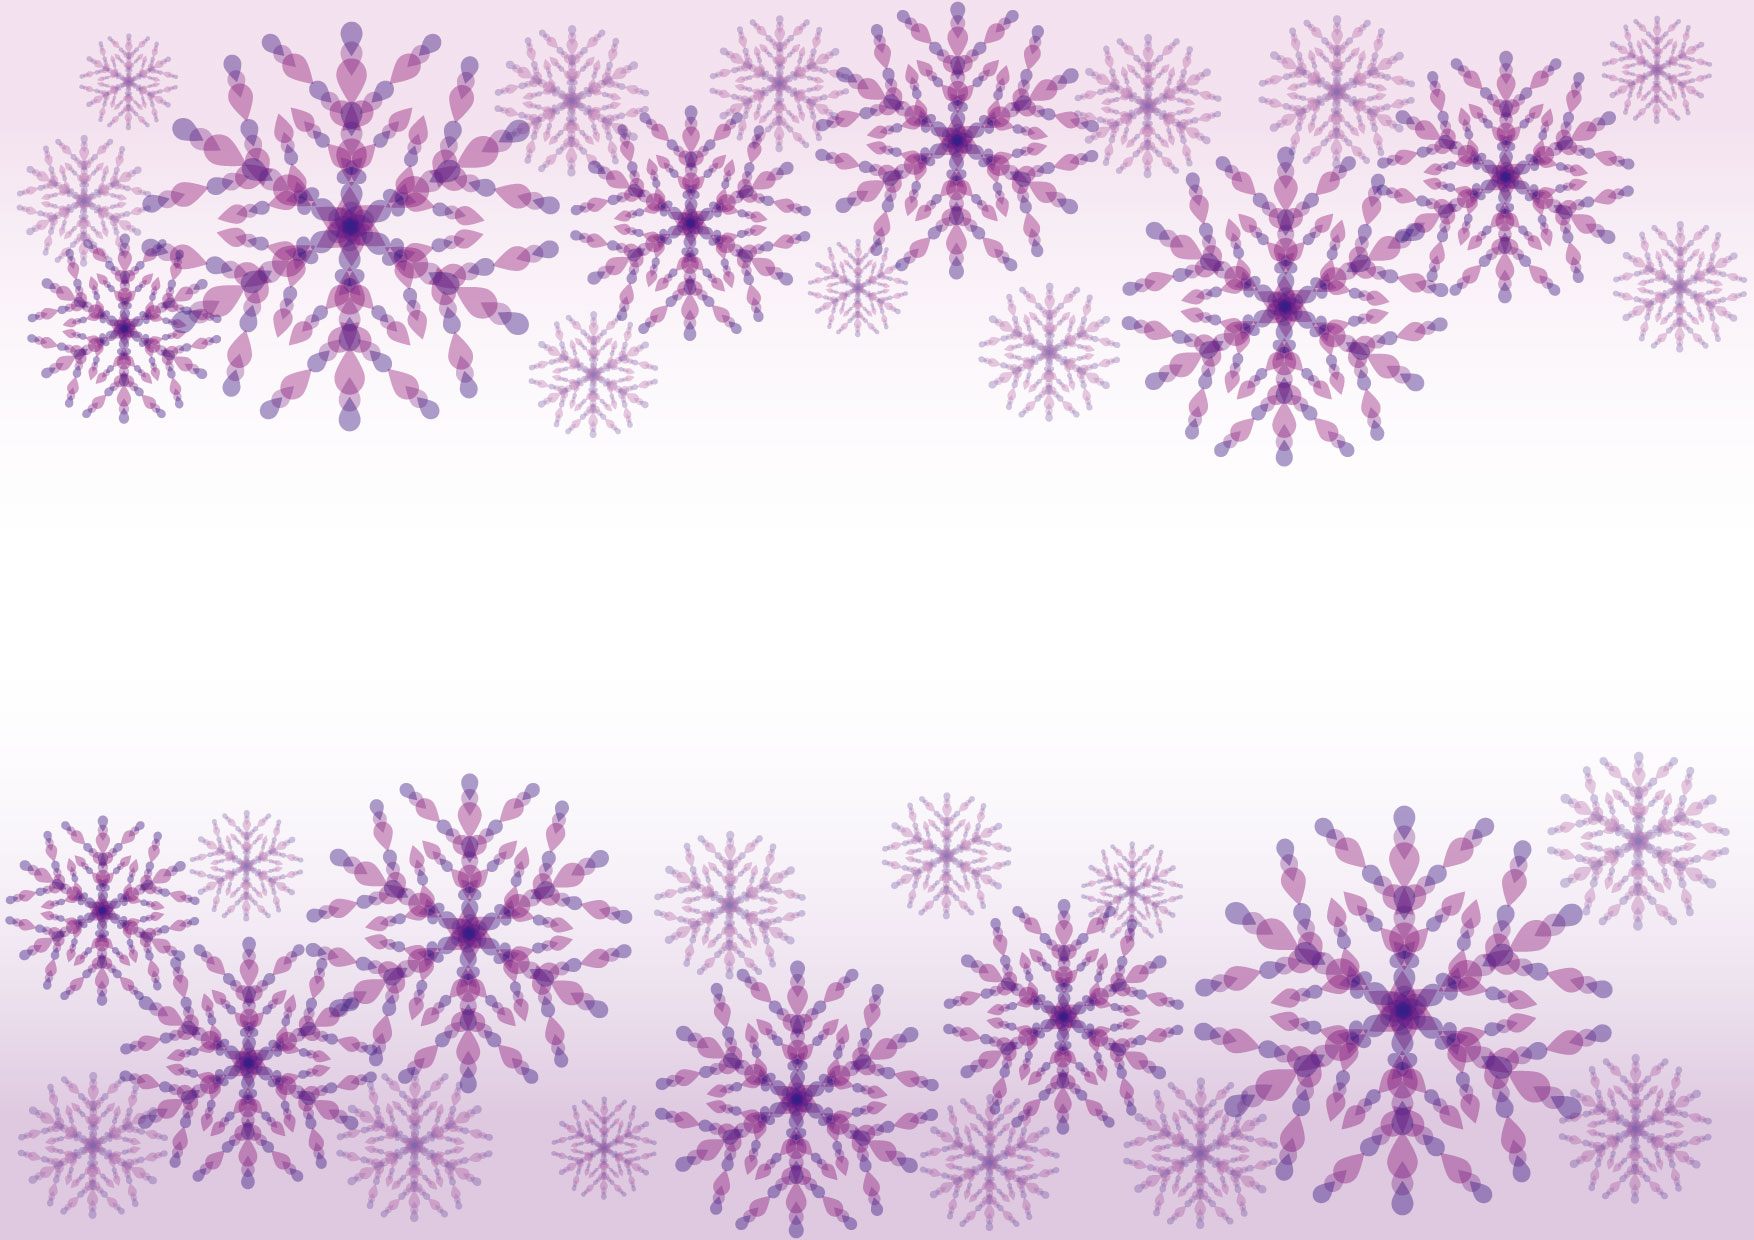 可愛いイラスト無料 雪の結晶 紫色 背景 Free Illustration Snowflakes Purple Background 公式 イラストダウンロード